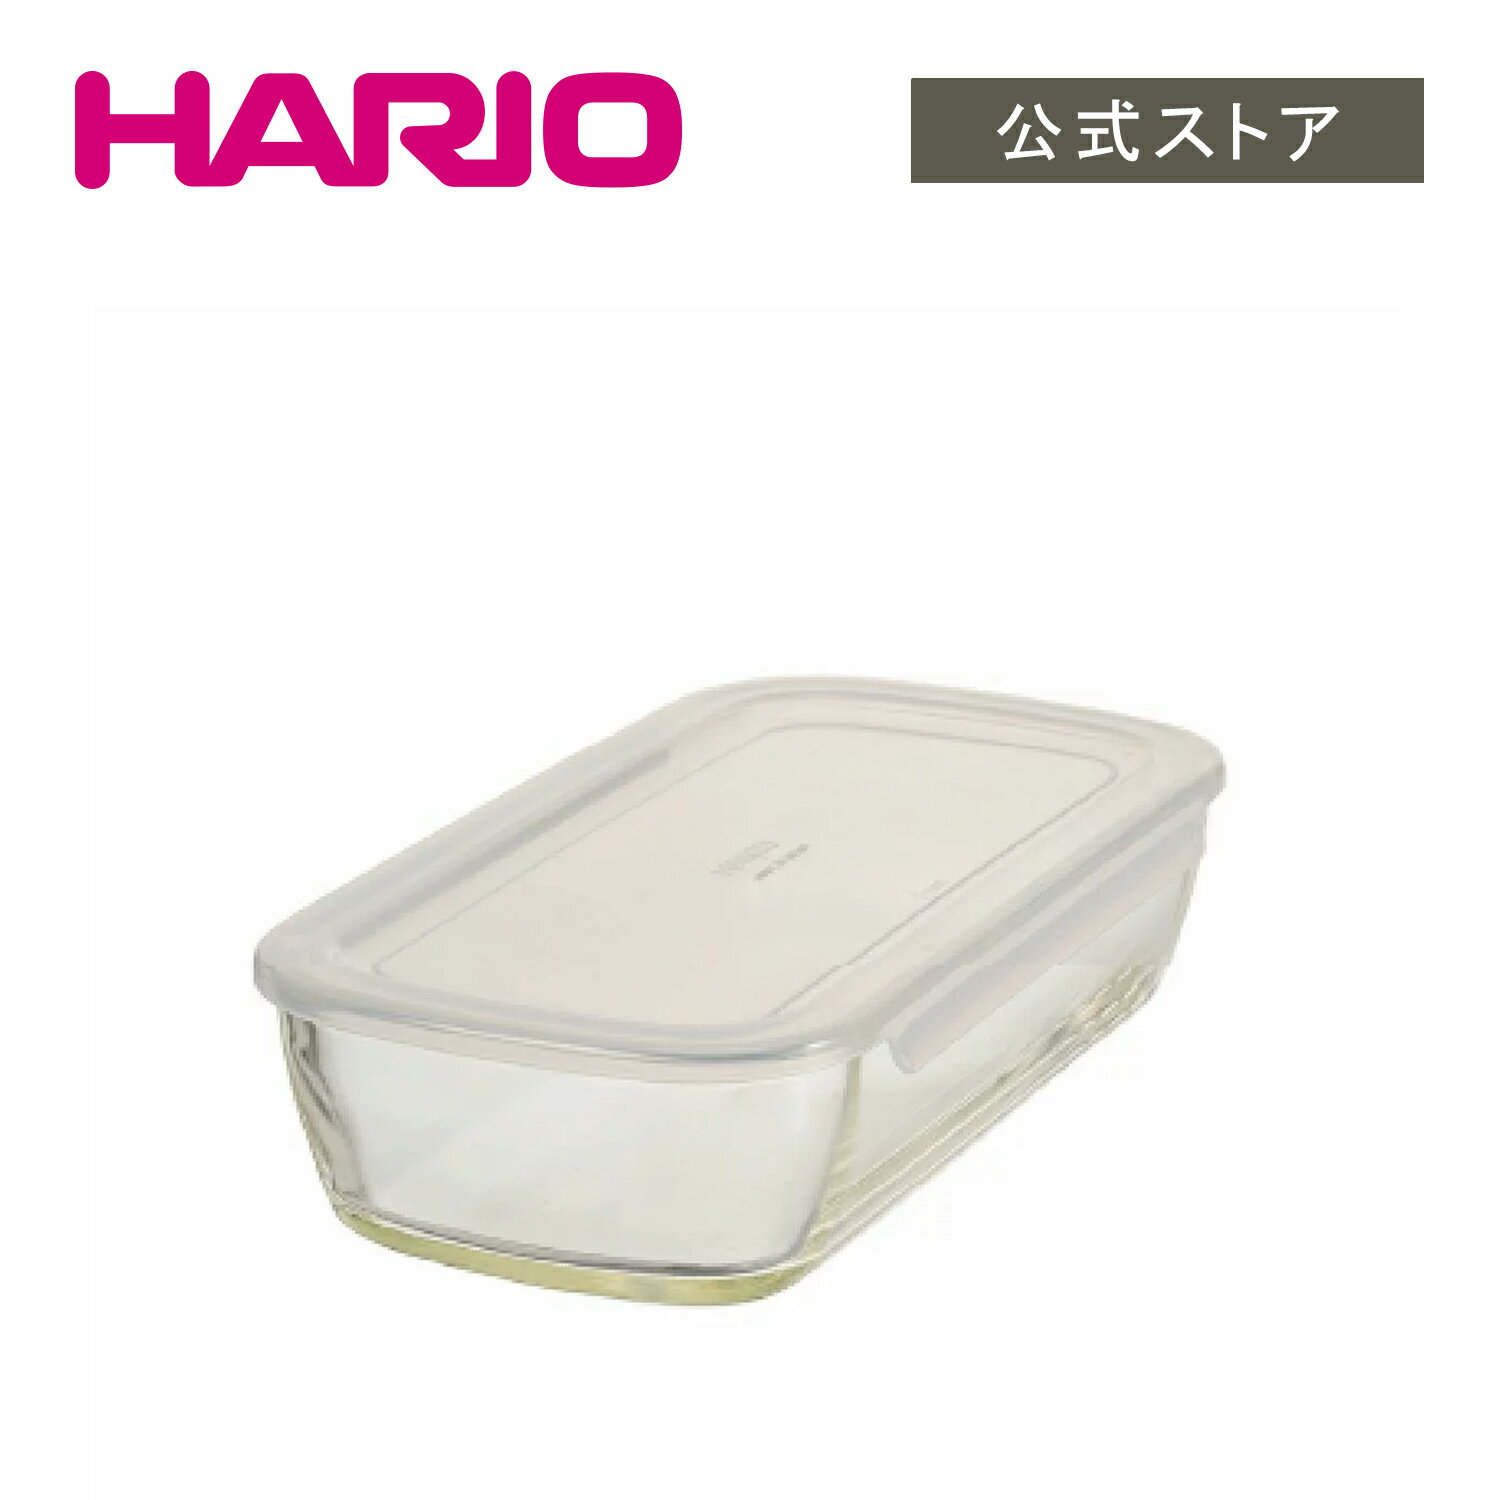 【公式ショップ】HARIO 耐熱ガラス製保存容器 角 900